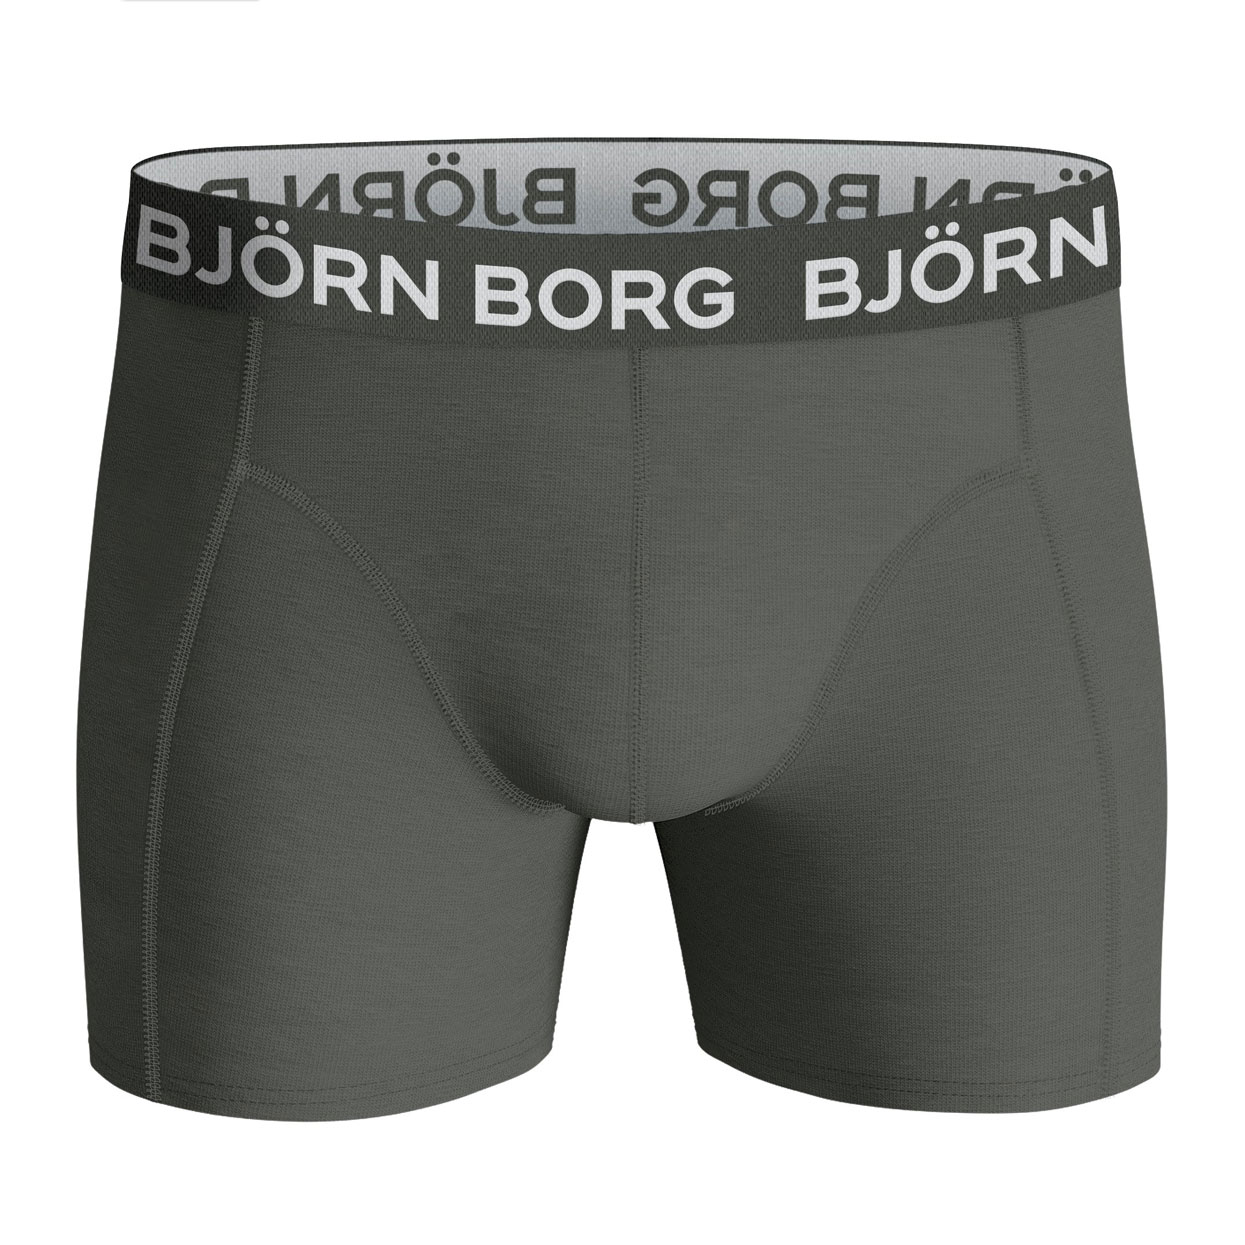 Bjorn-Borg-10002094-mp011-voorkant